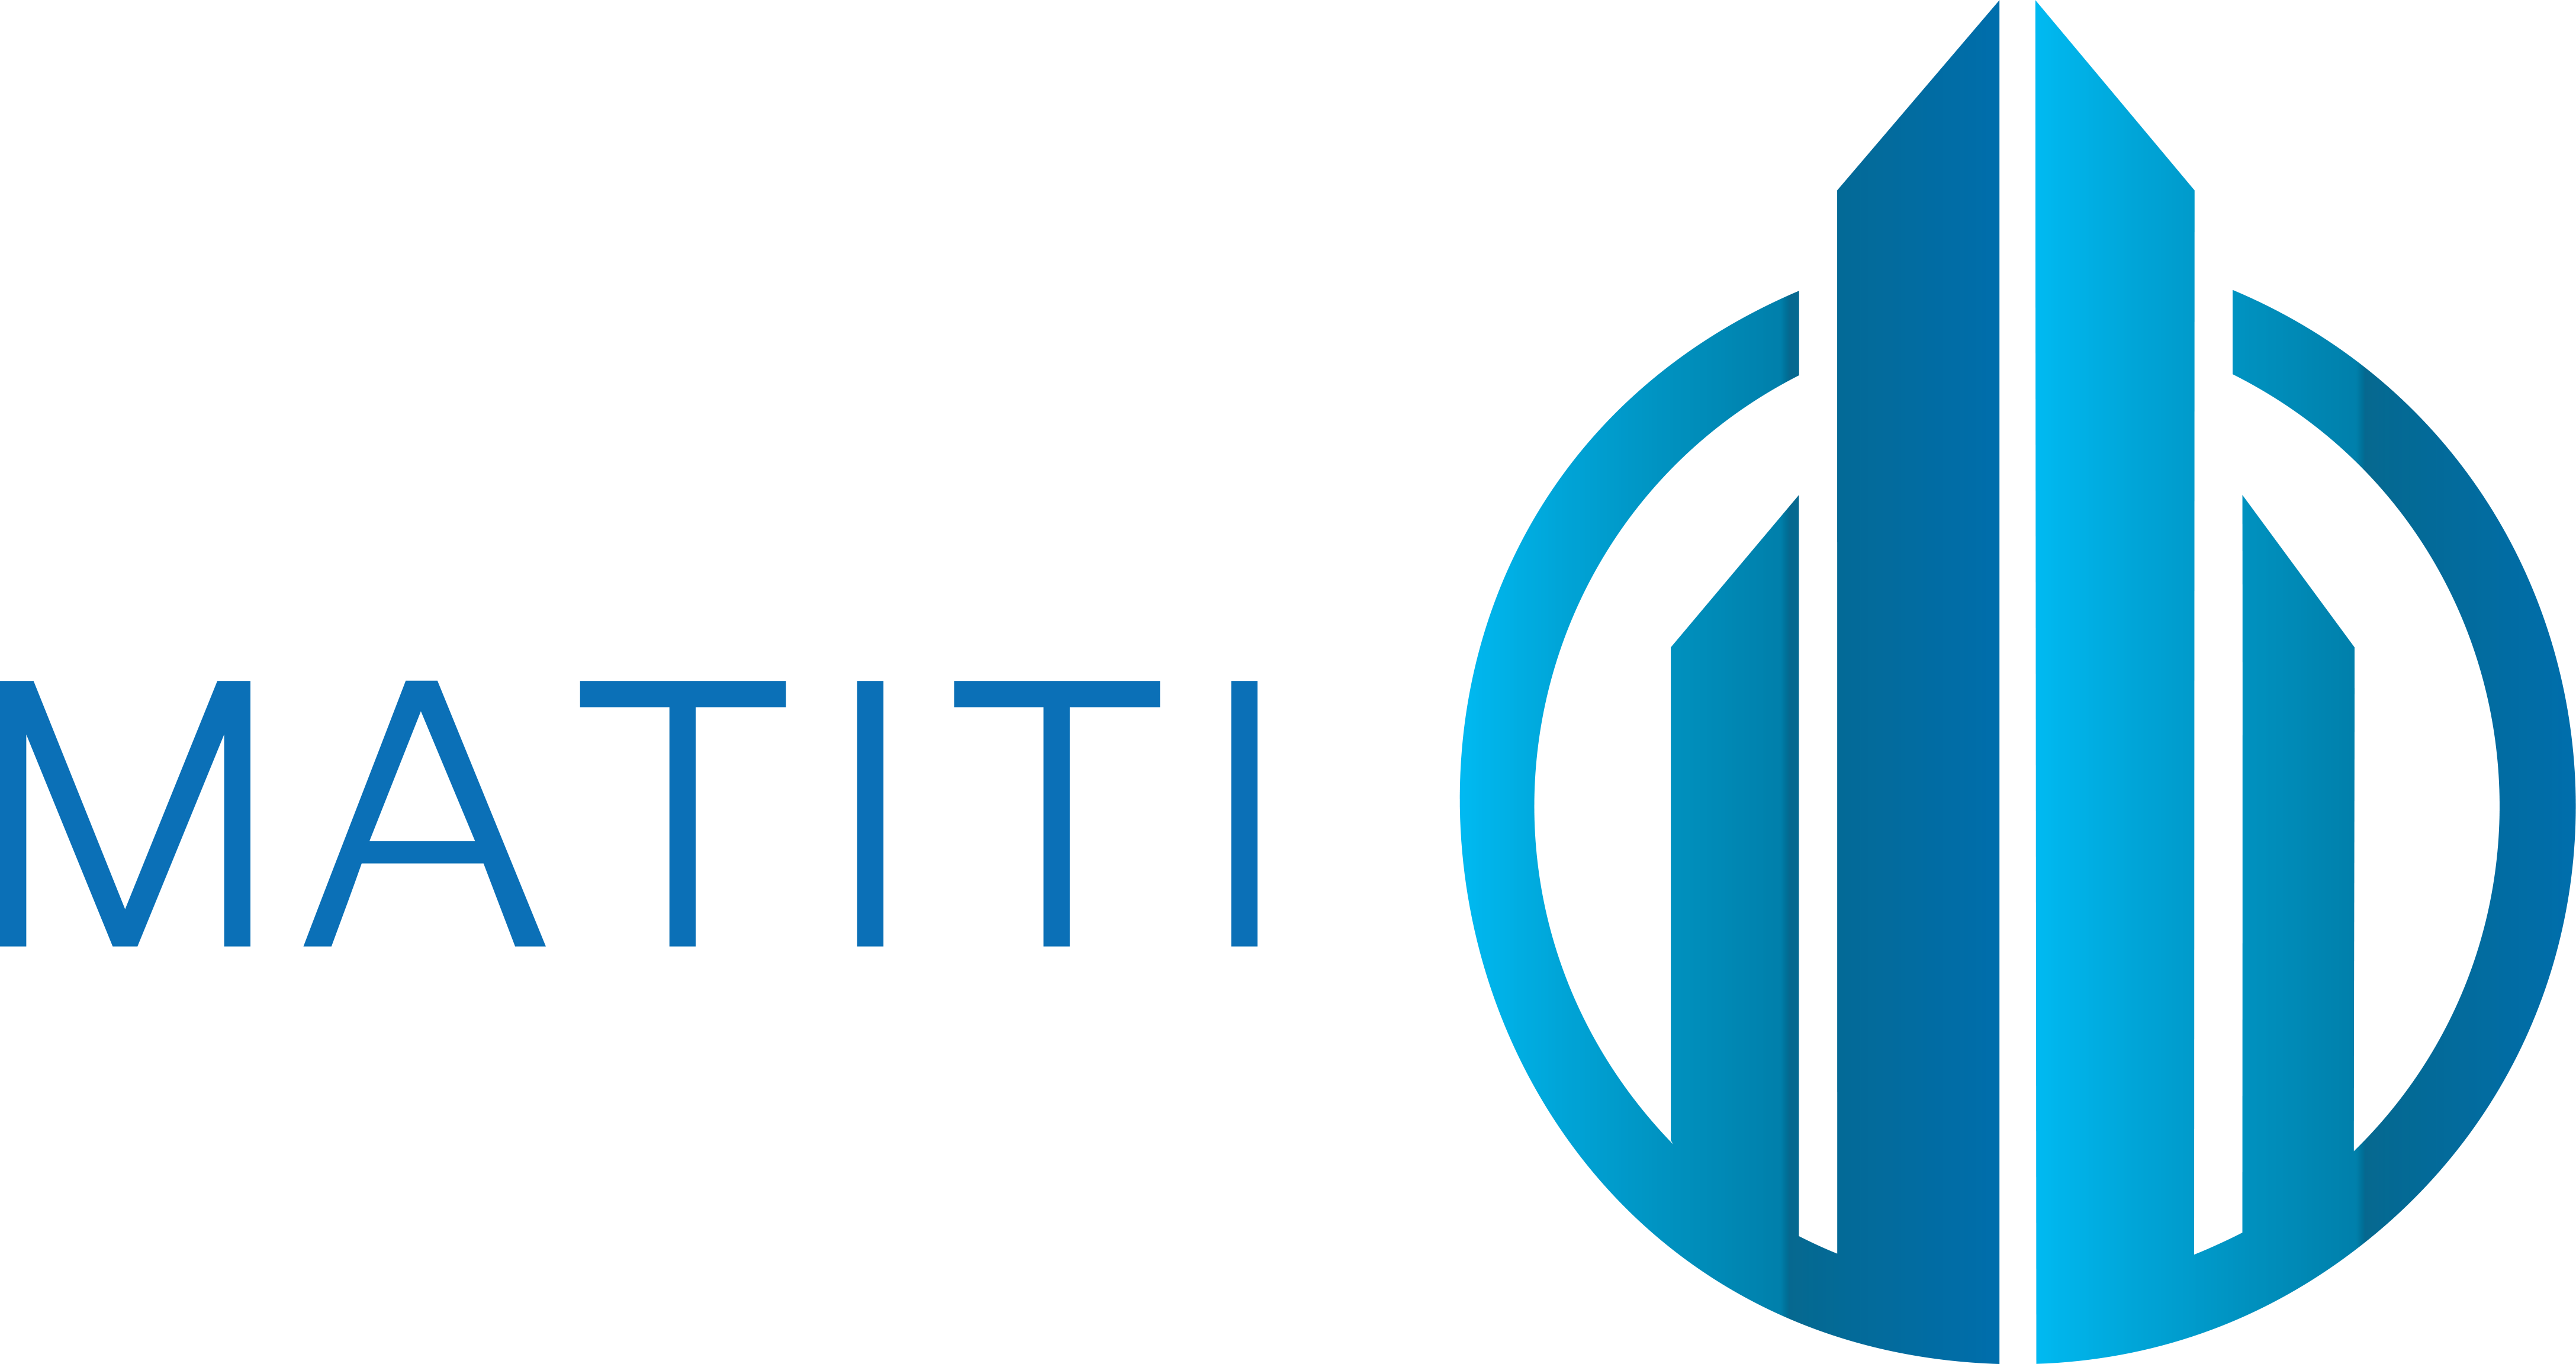 Matiti Logo